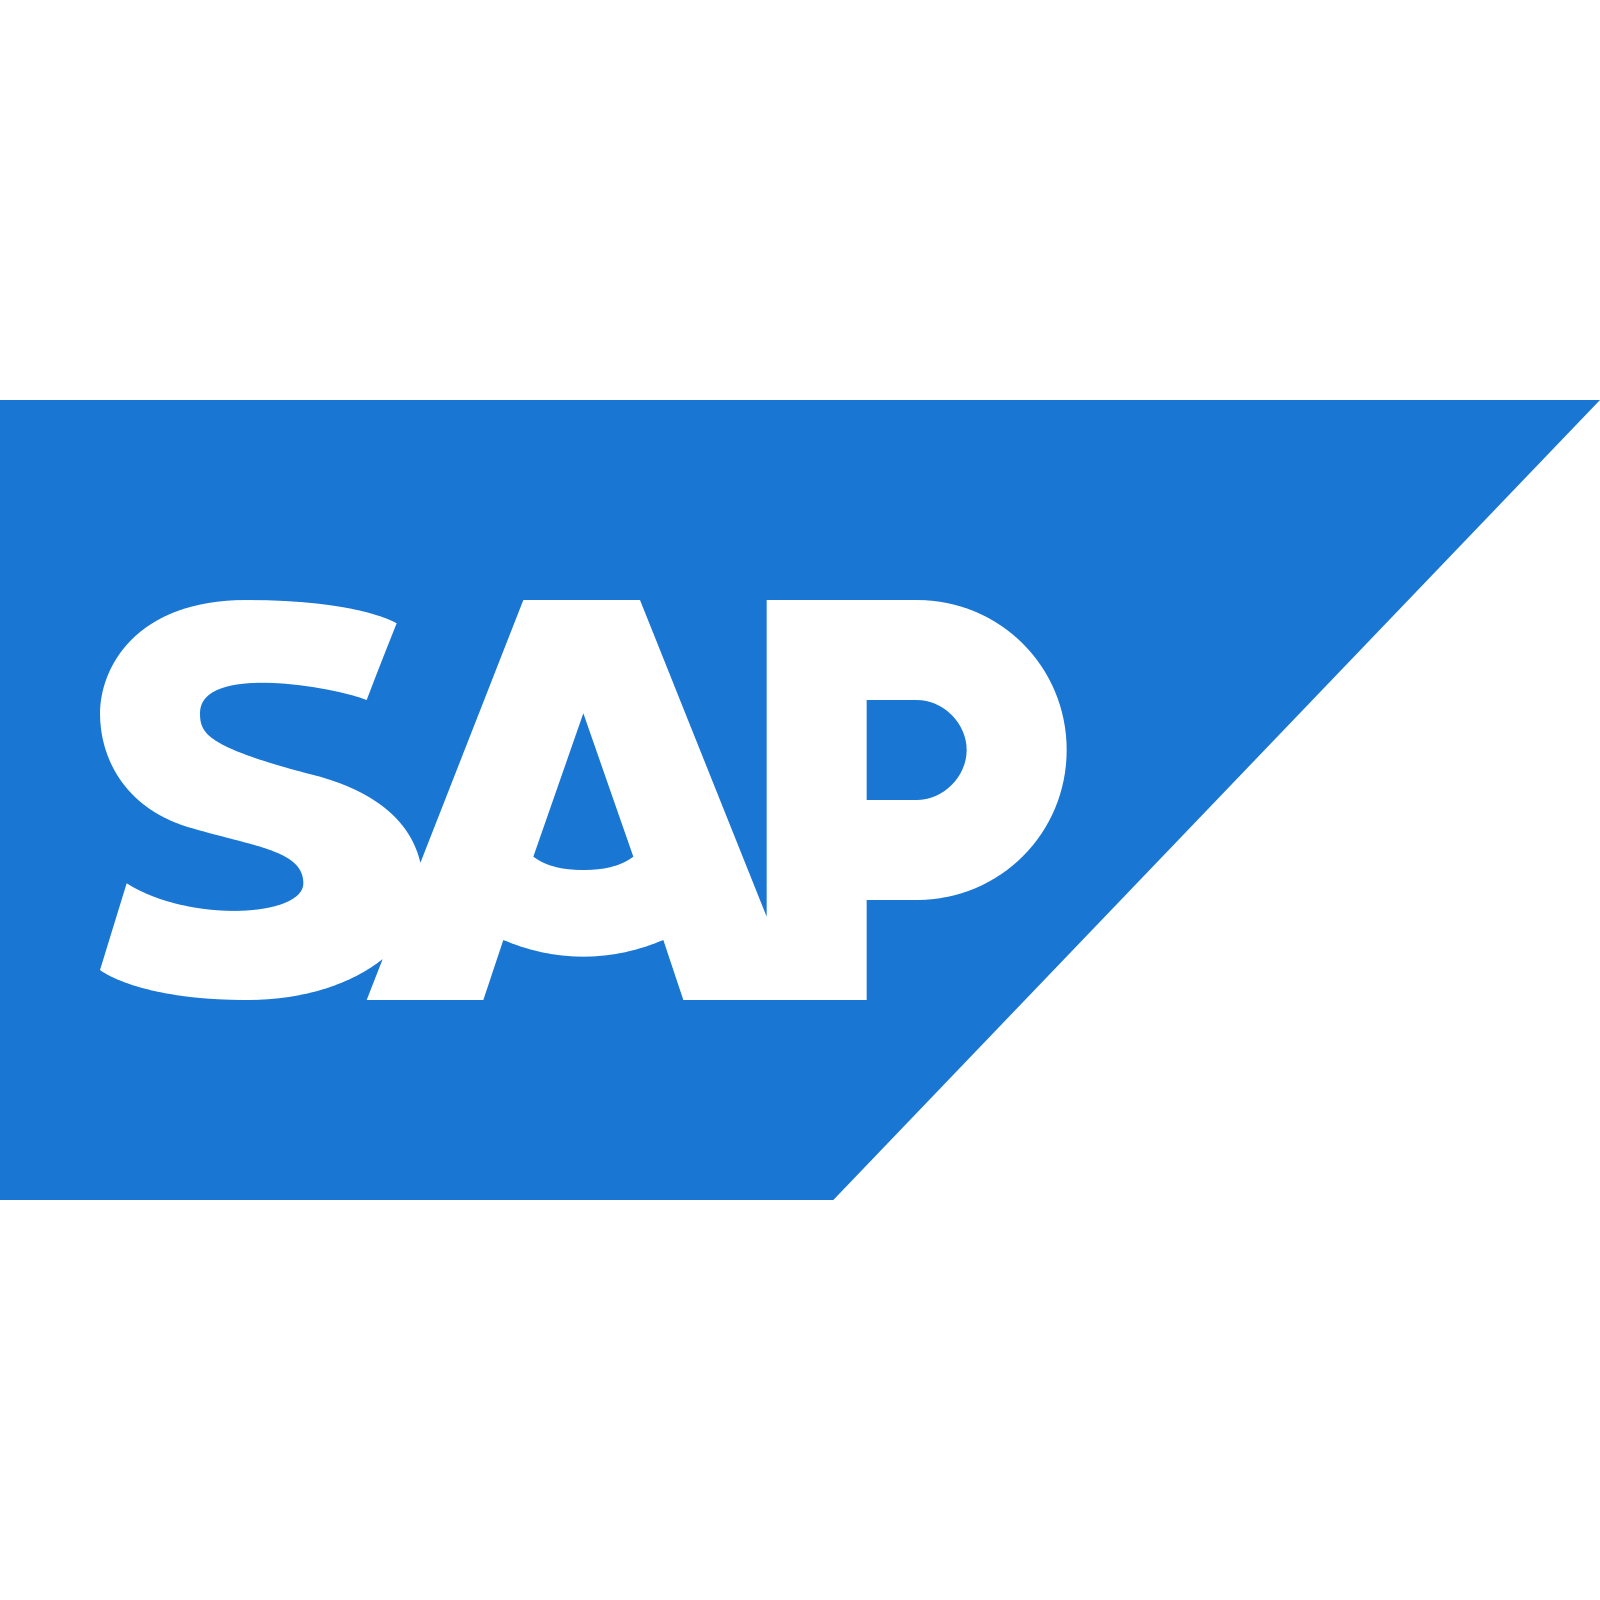 SAP brand vector logo